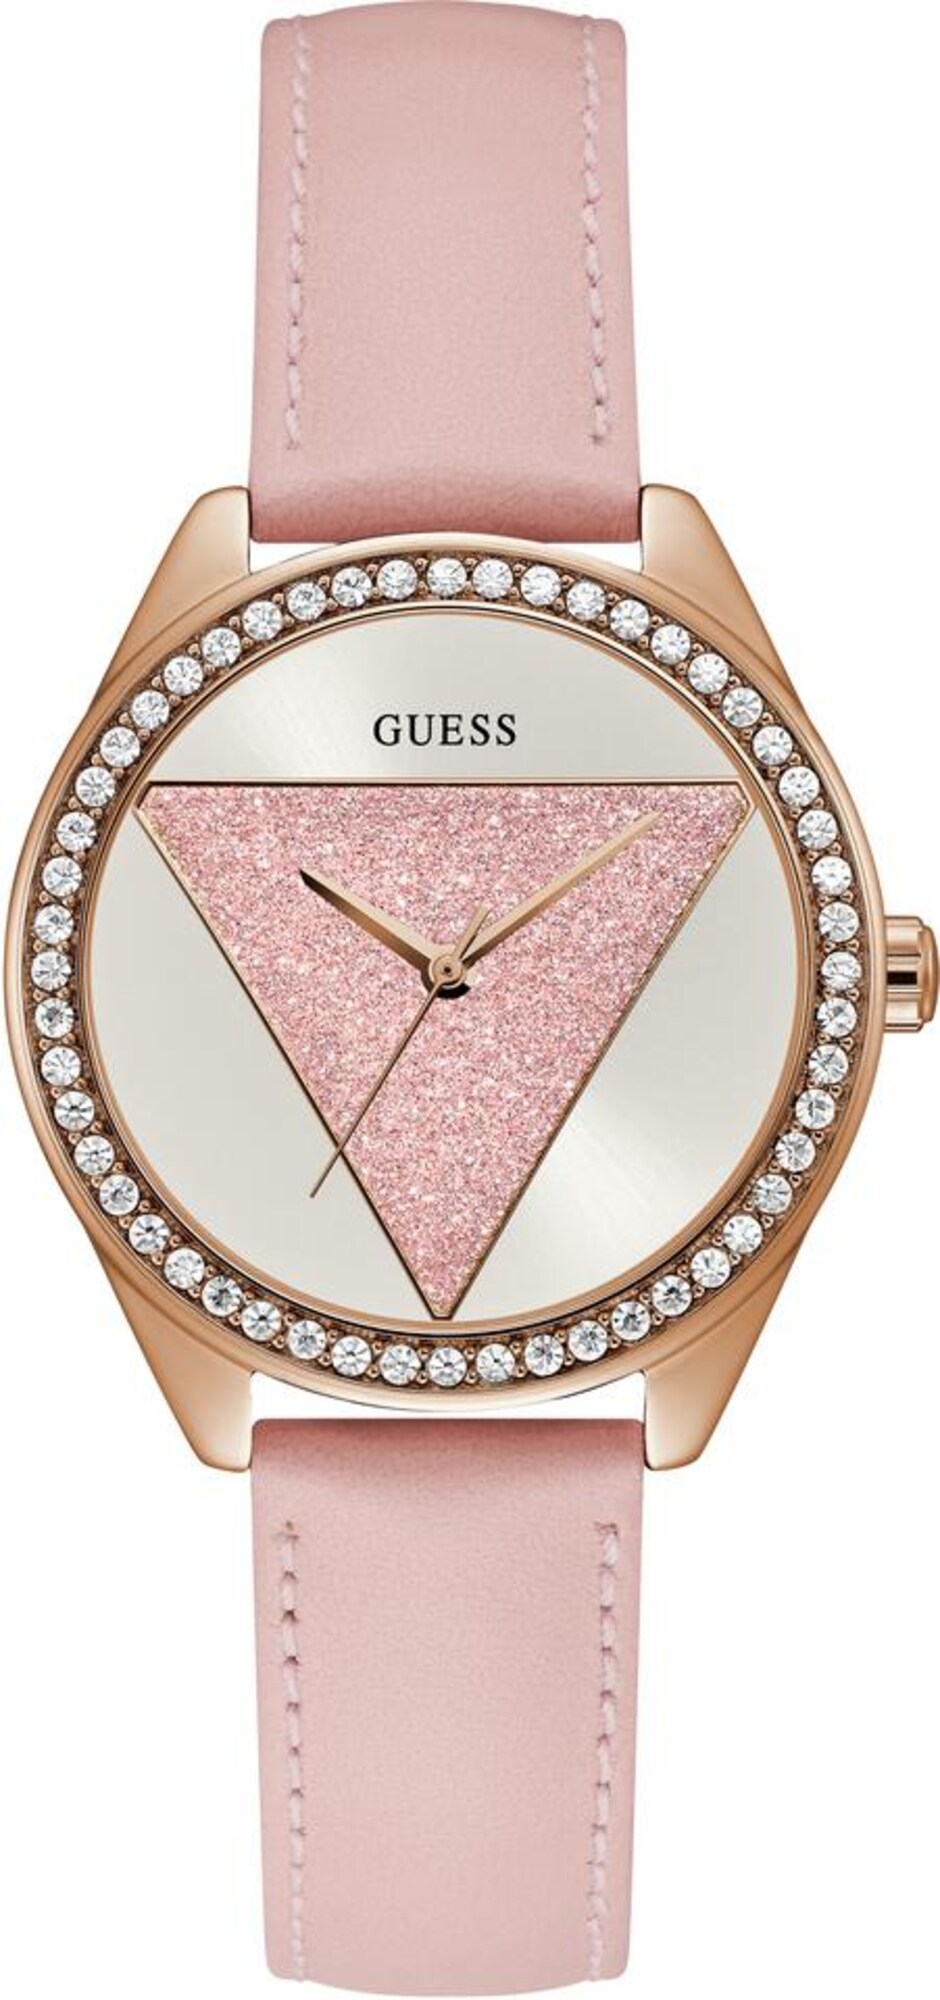 GUESS Analoginis (įprastinio dizaino) laikrodis  ryškiai rožinė spalva / rožinio aukso spalva / balta